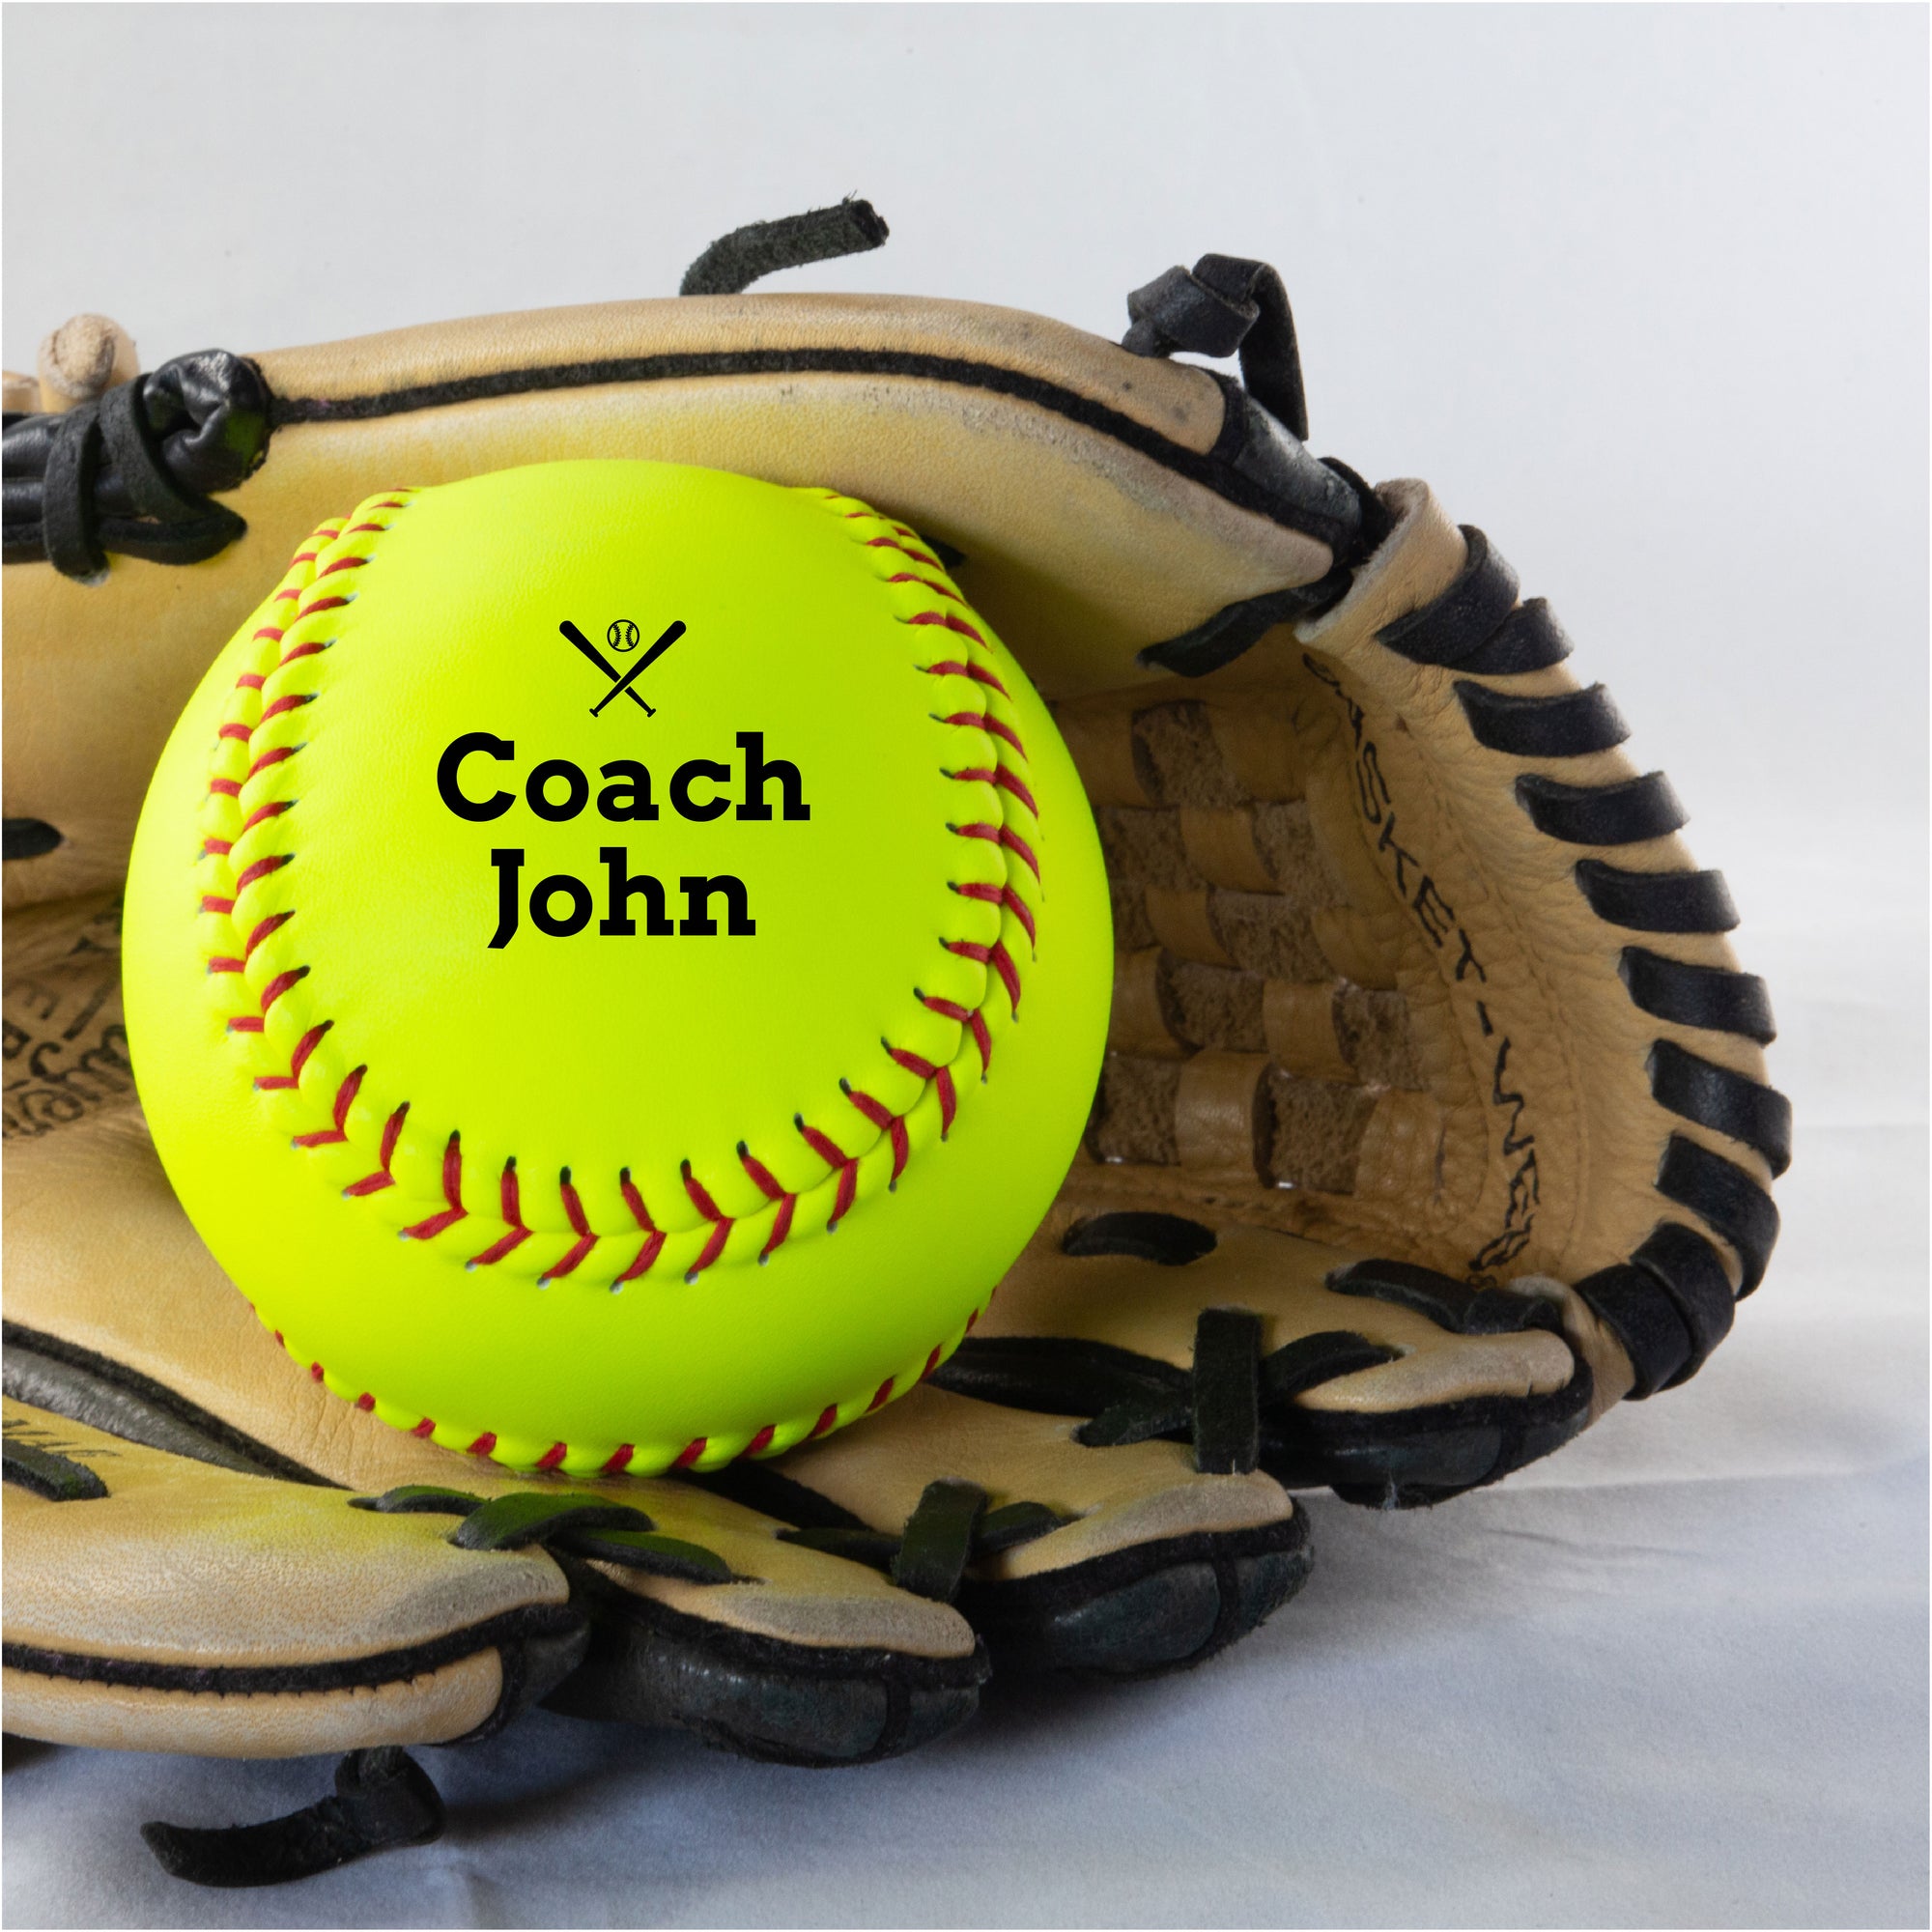 Coach Personalization, Printed Softball